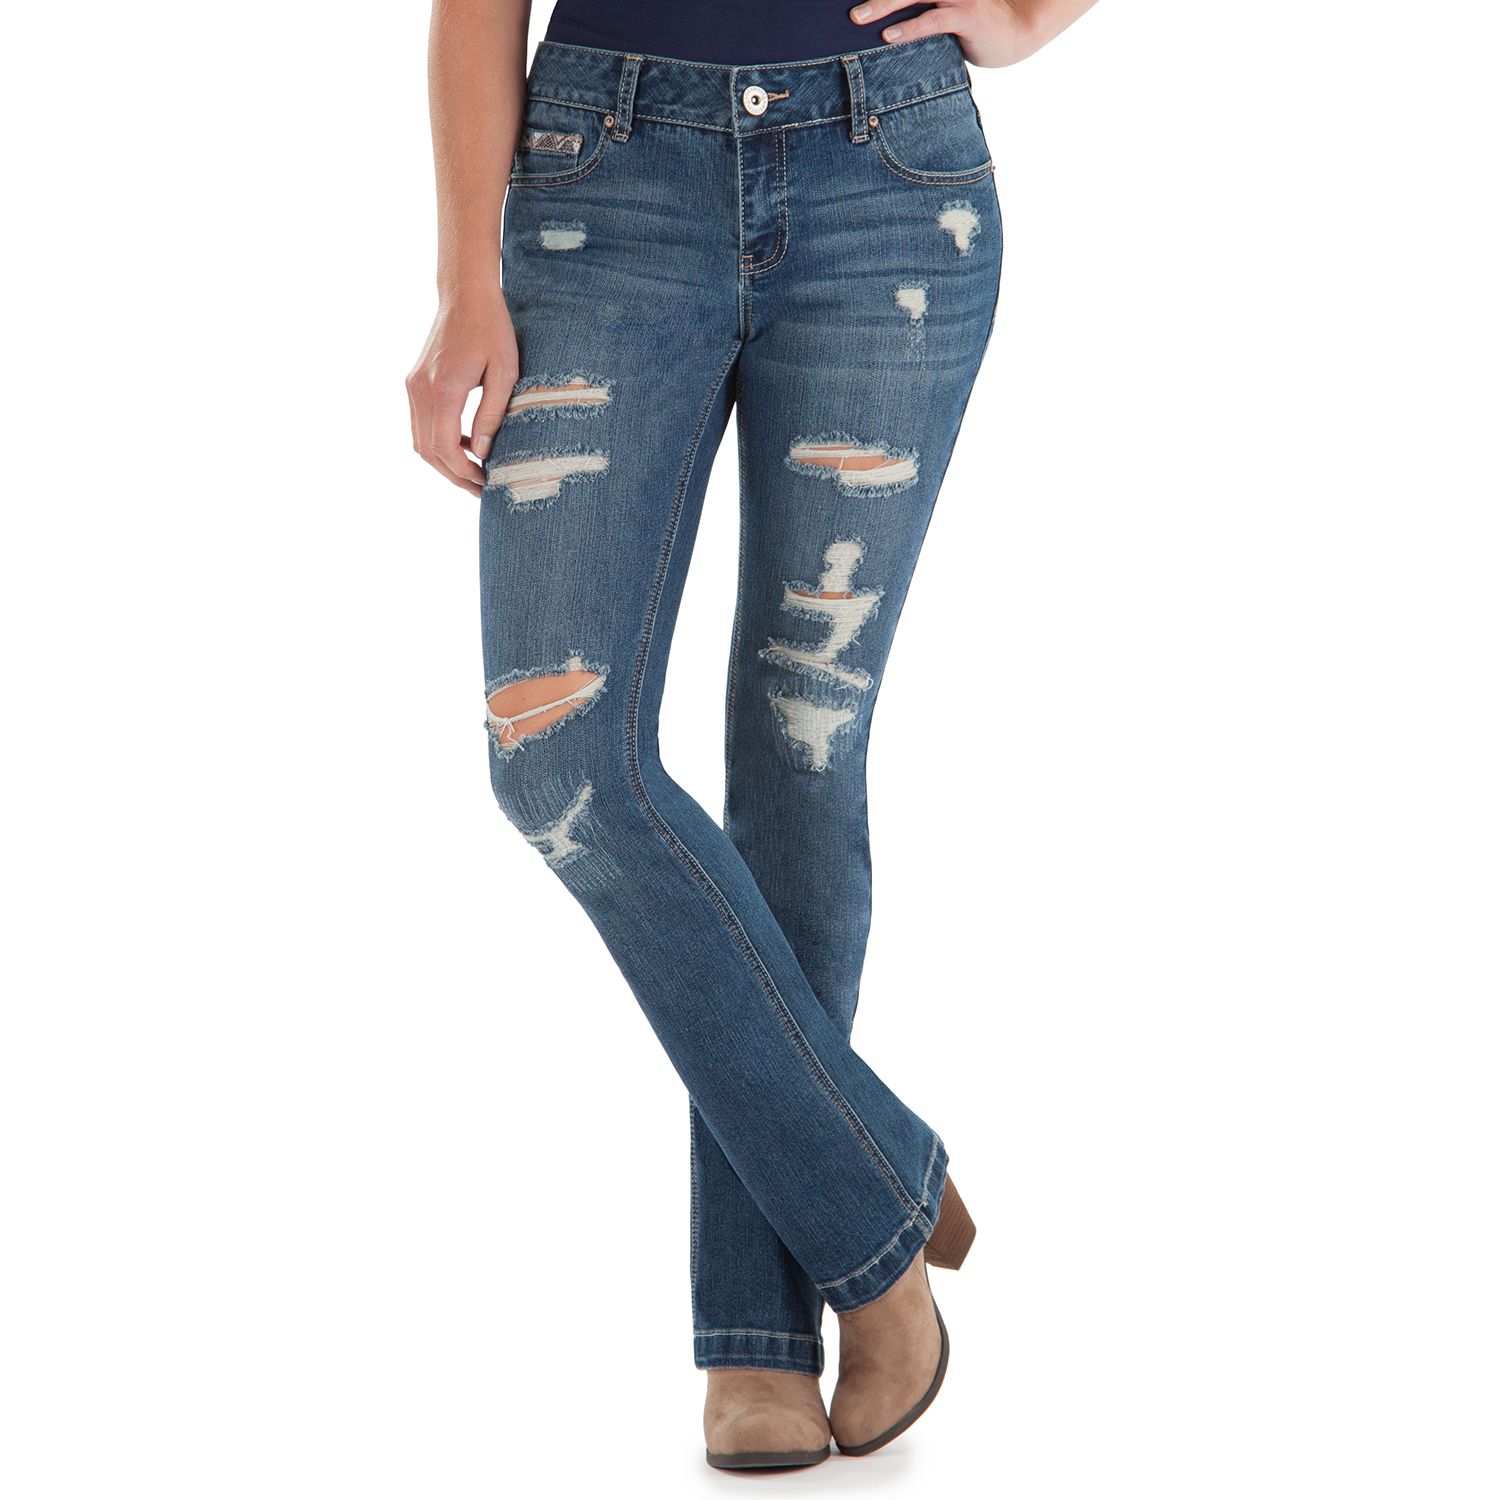 amethyst jeans plus size 24